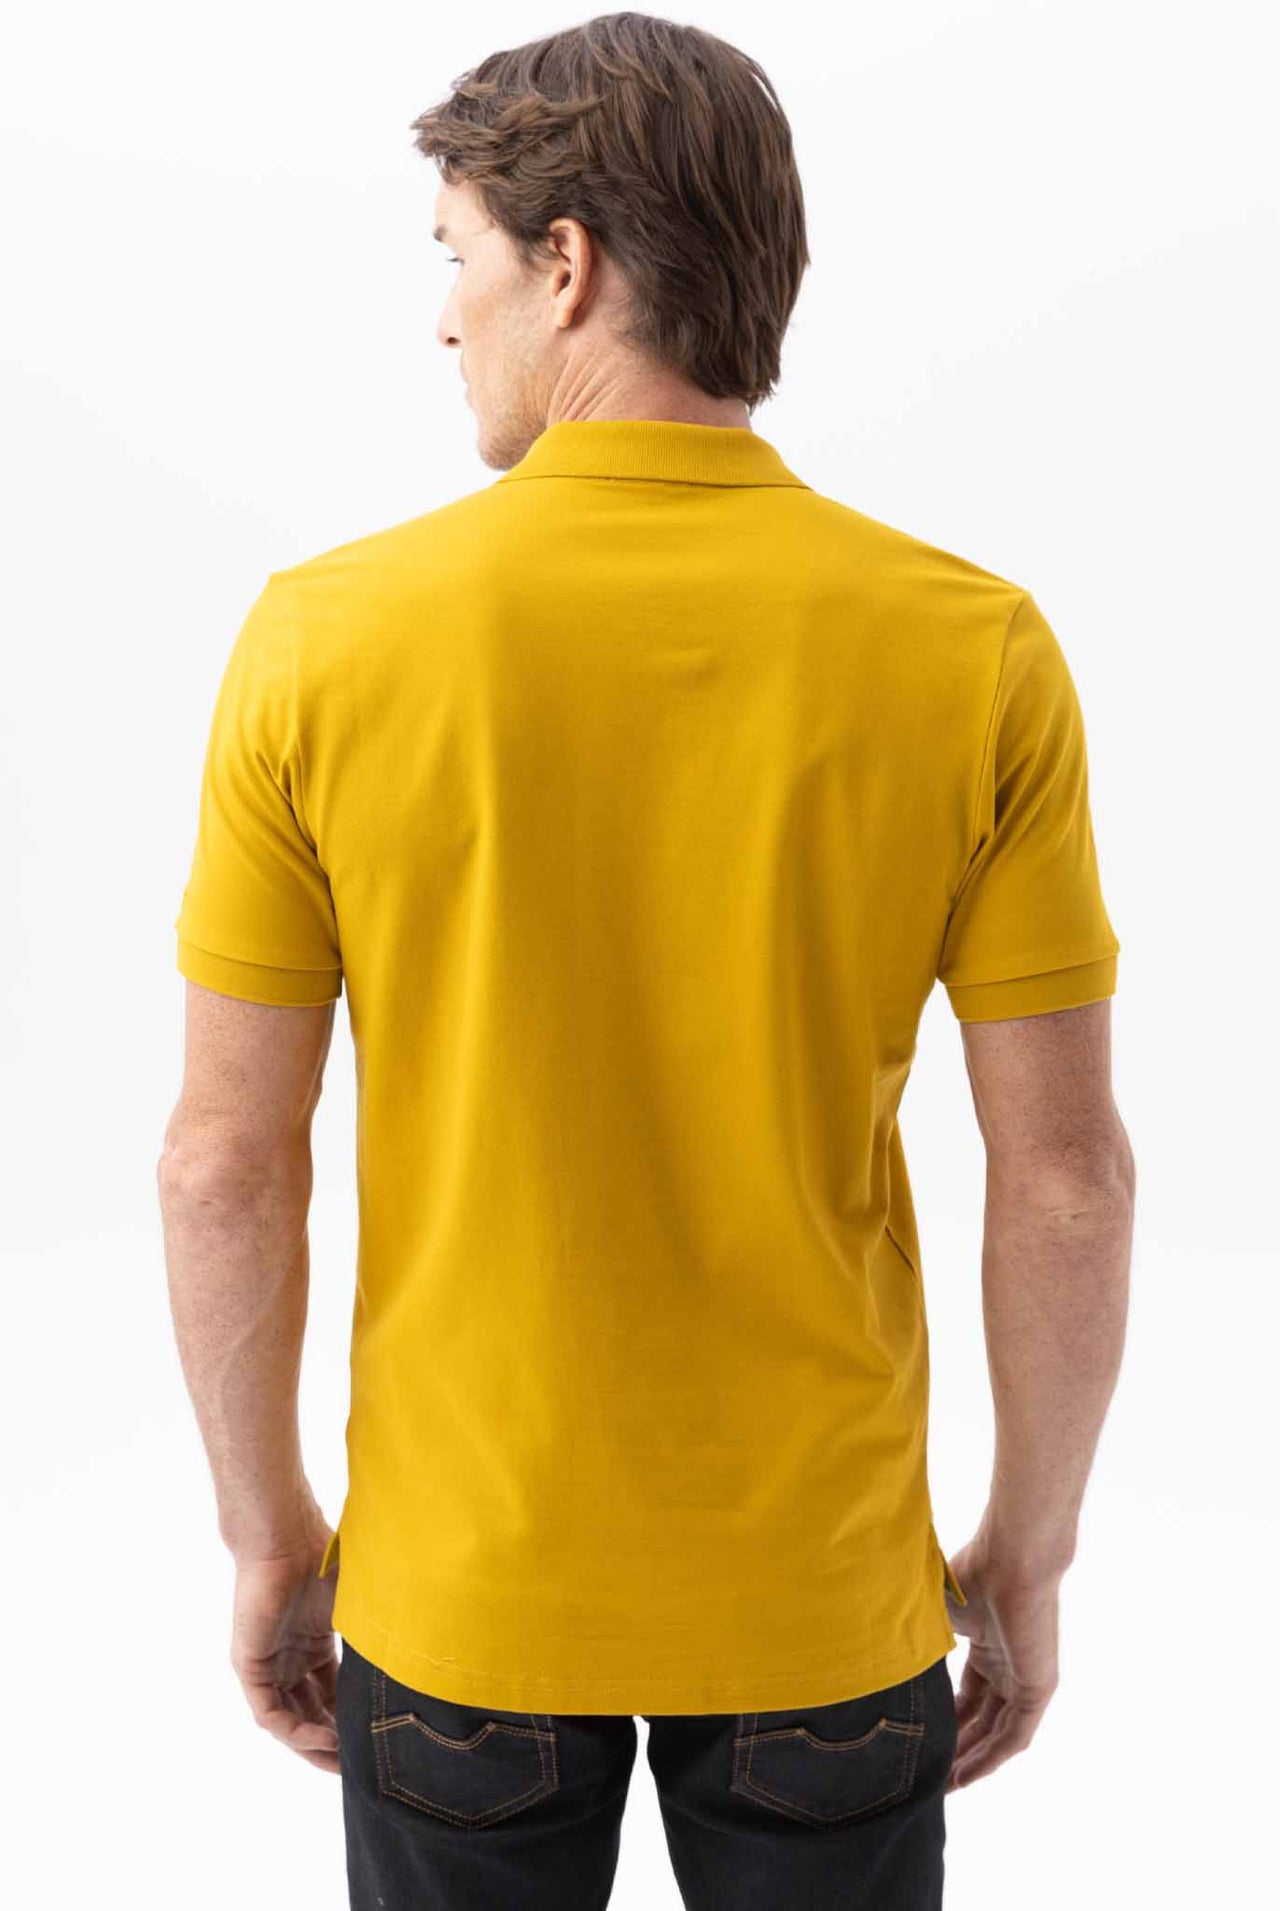 Camiseta Tipo Polo Chevignon Slim Fit Manga Corta, Cuello Tejidos Tono Amarillo